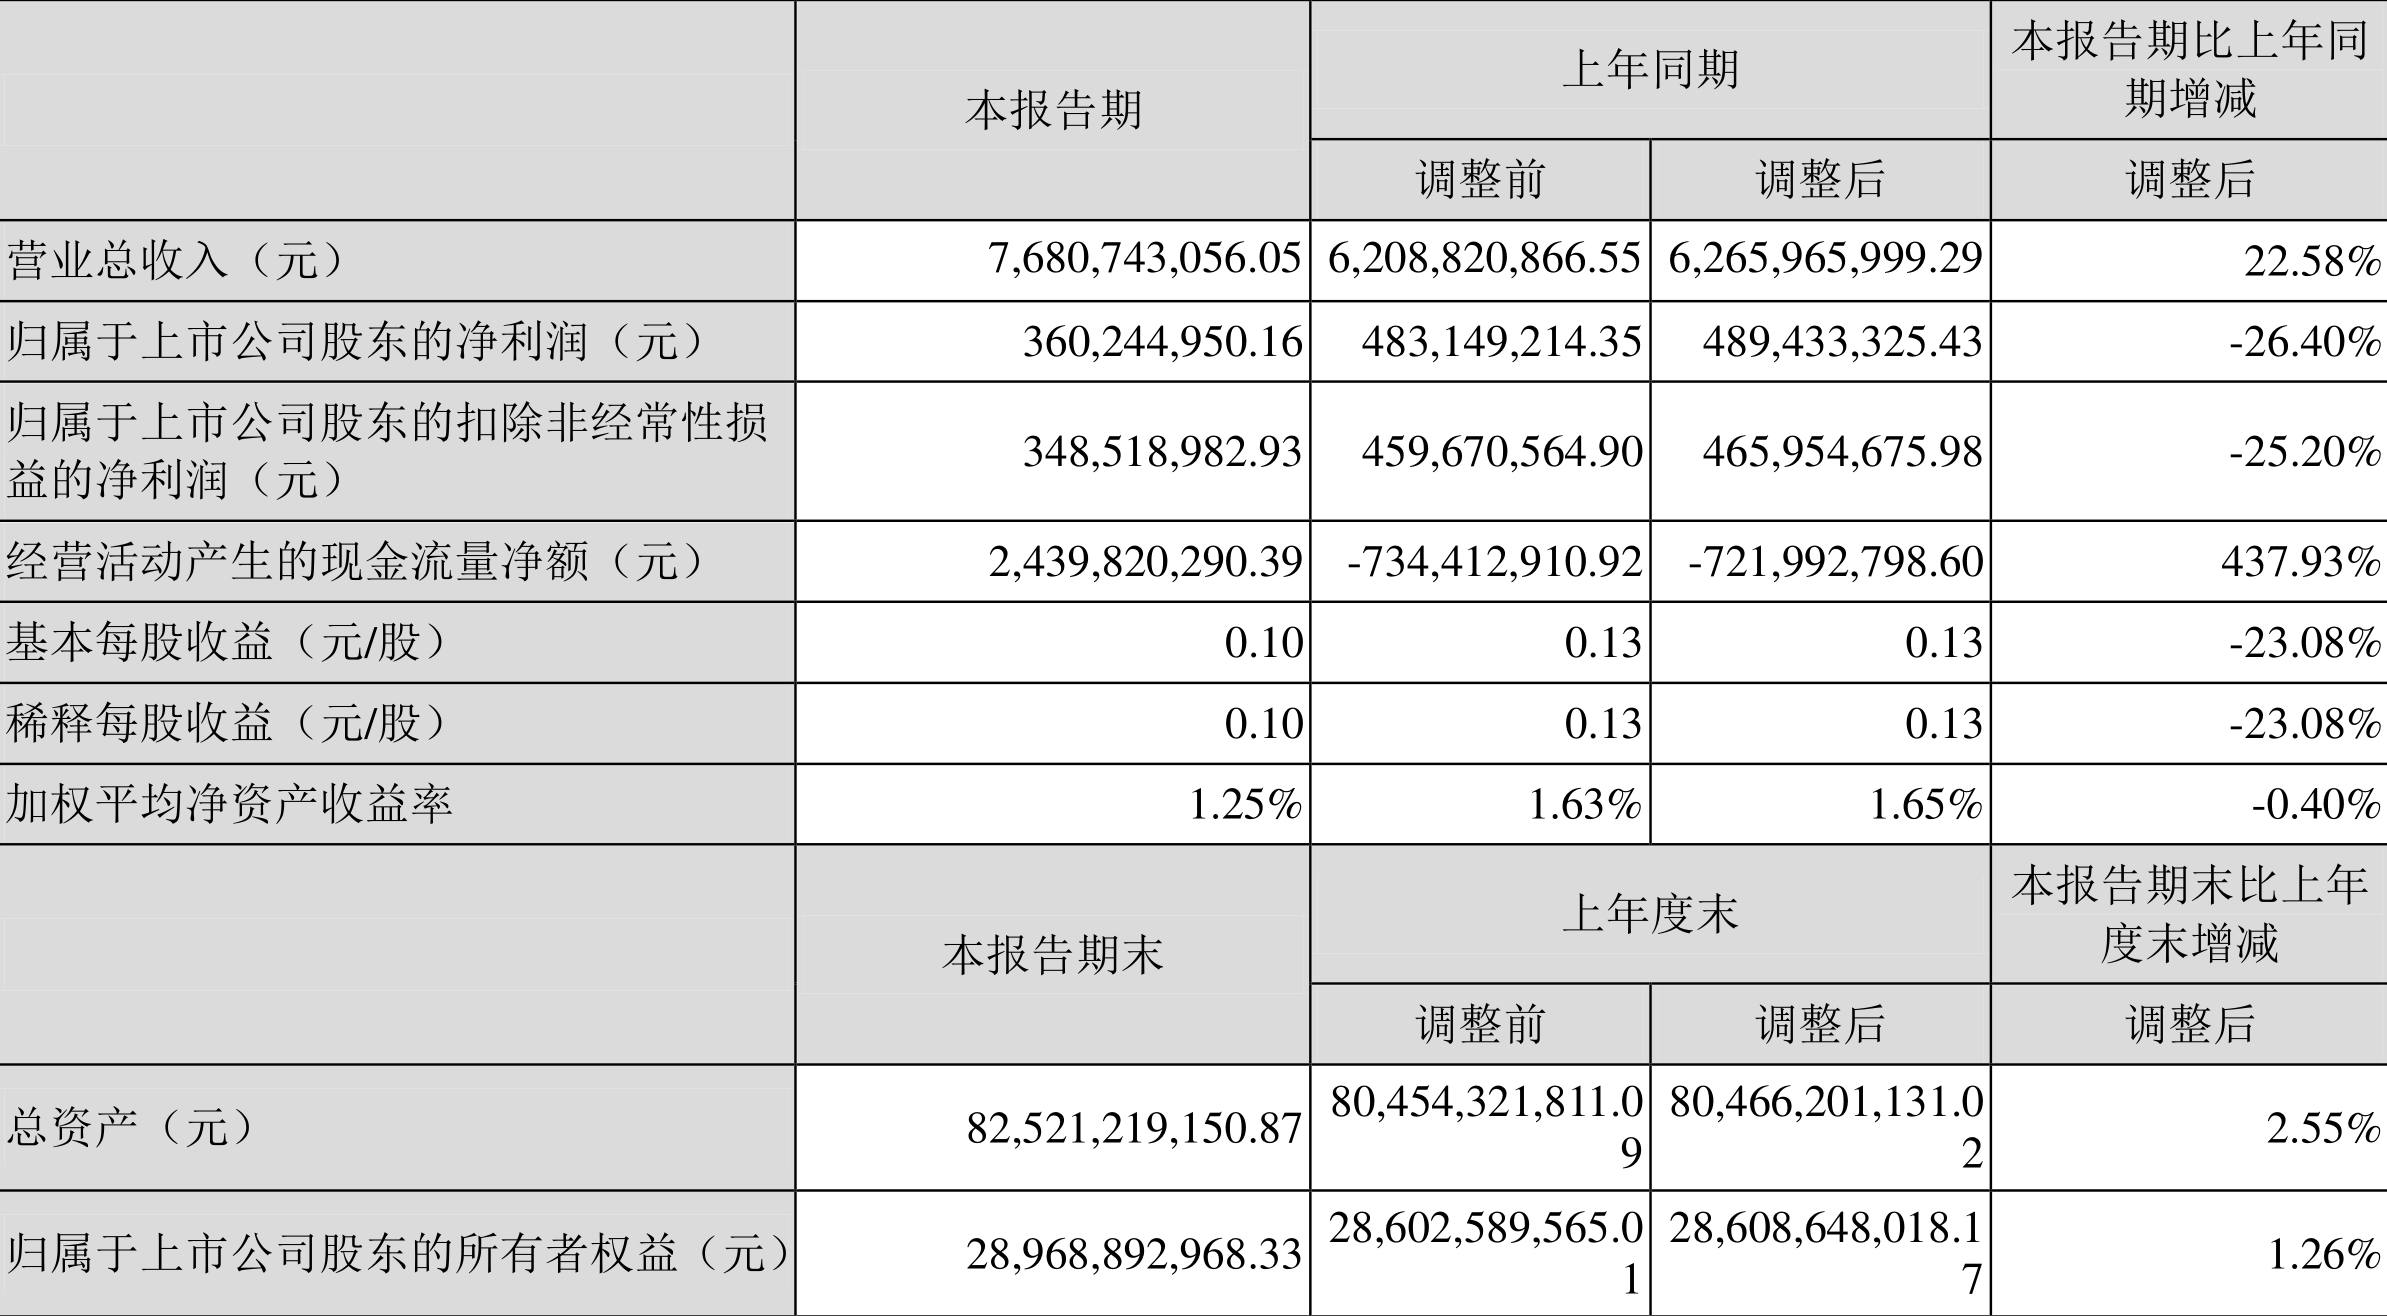 江苏国信：2022年一季度净利润3.60亿元 同比下降26.40%